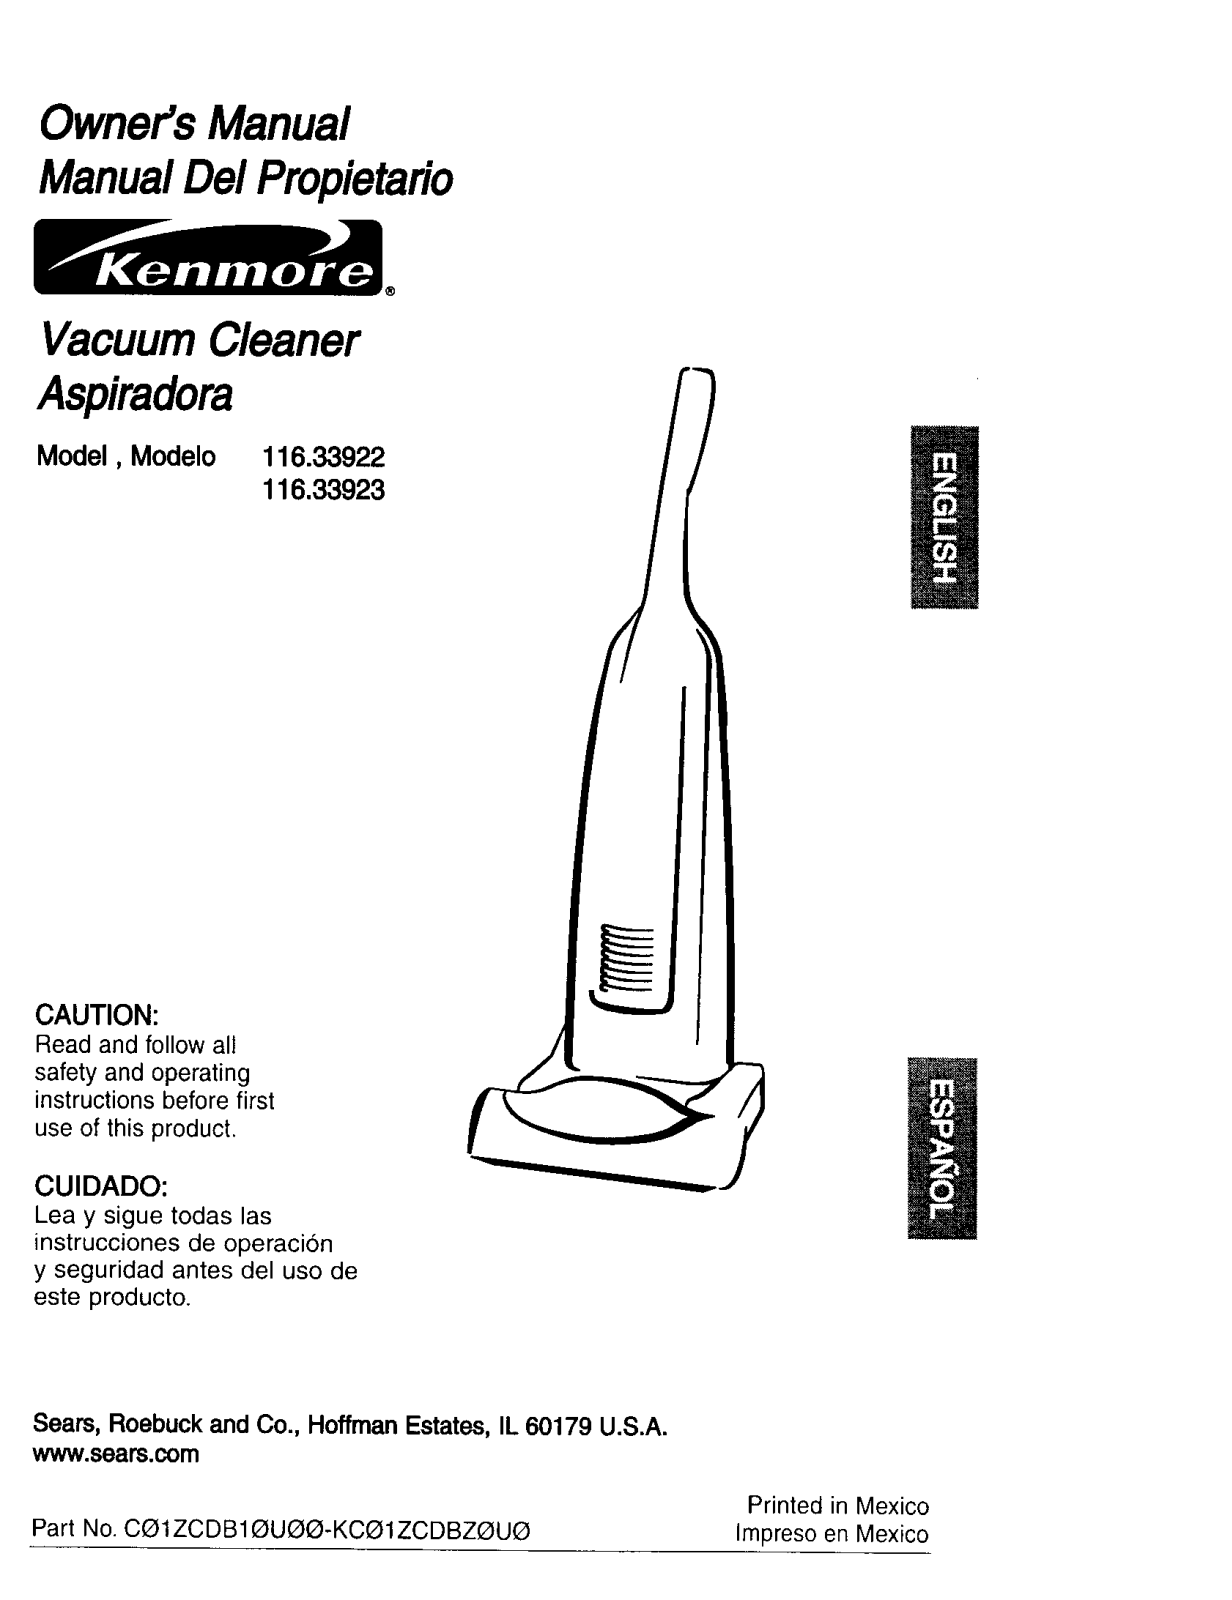 Kenmore 116.33923300, 116.33922300 Owner's Manual